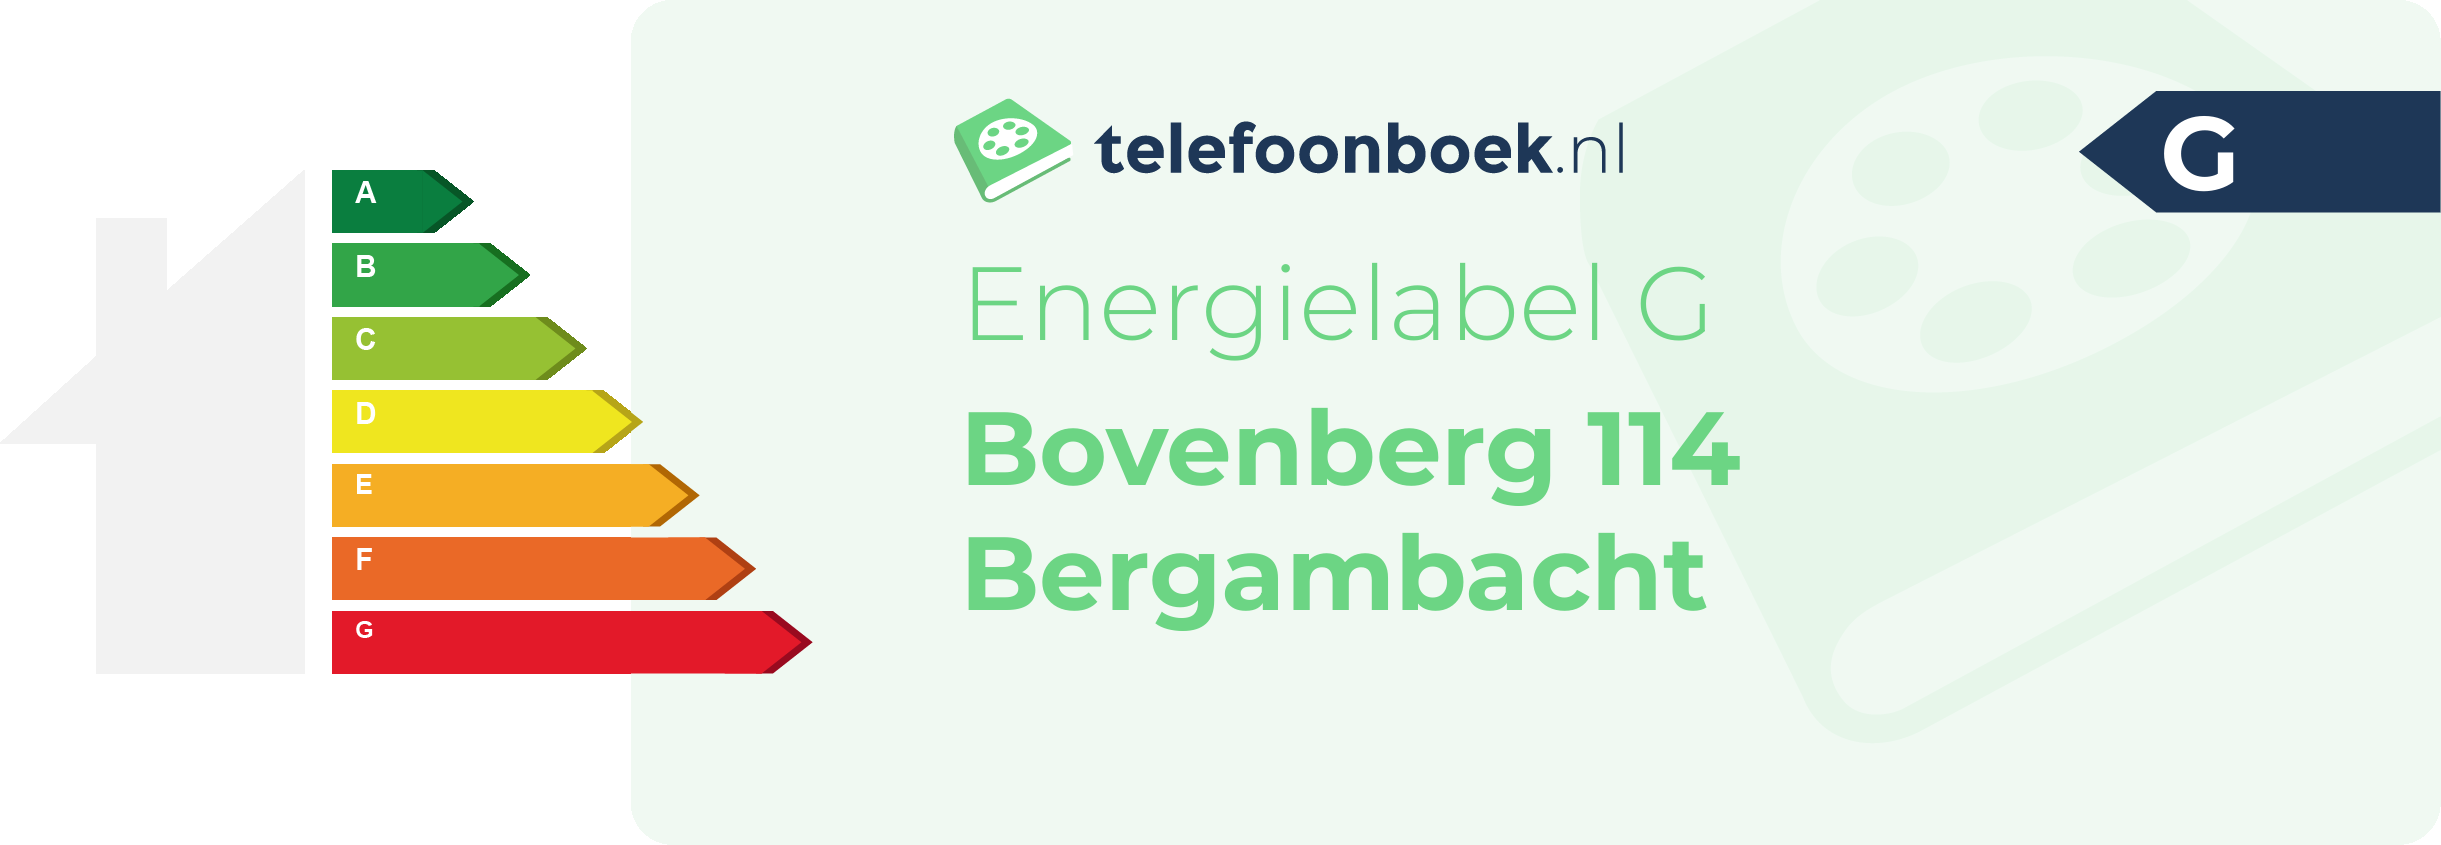 Energielabel Bovenberg 114 Bergambacht